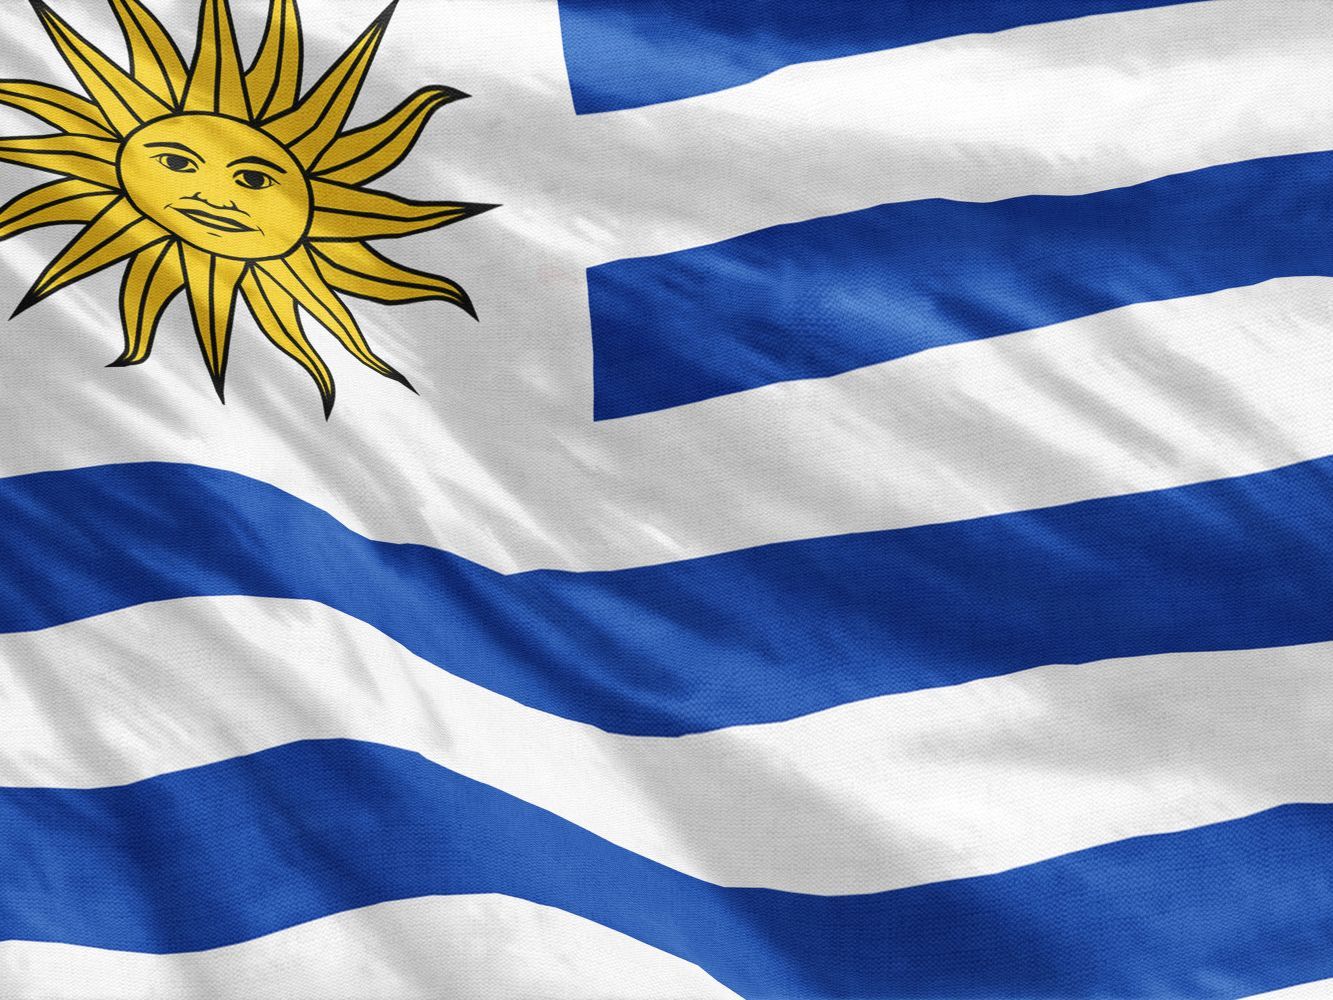 La nación uruguaya tendrá una segunda vuelta electoral el 24 de noviembre con los candidatos más votados.